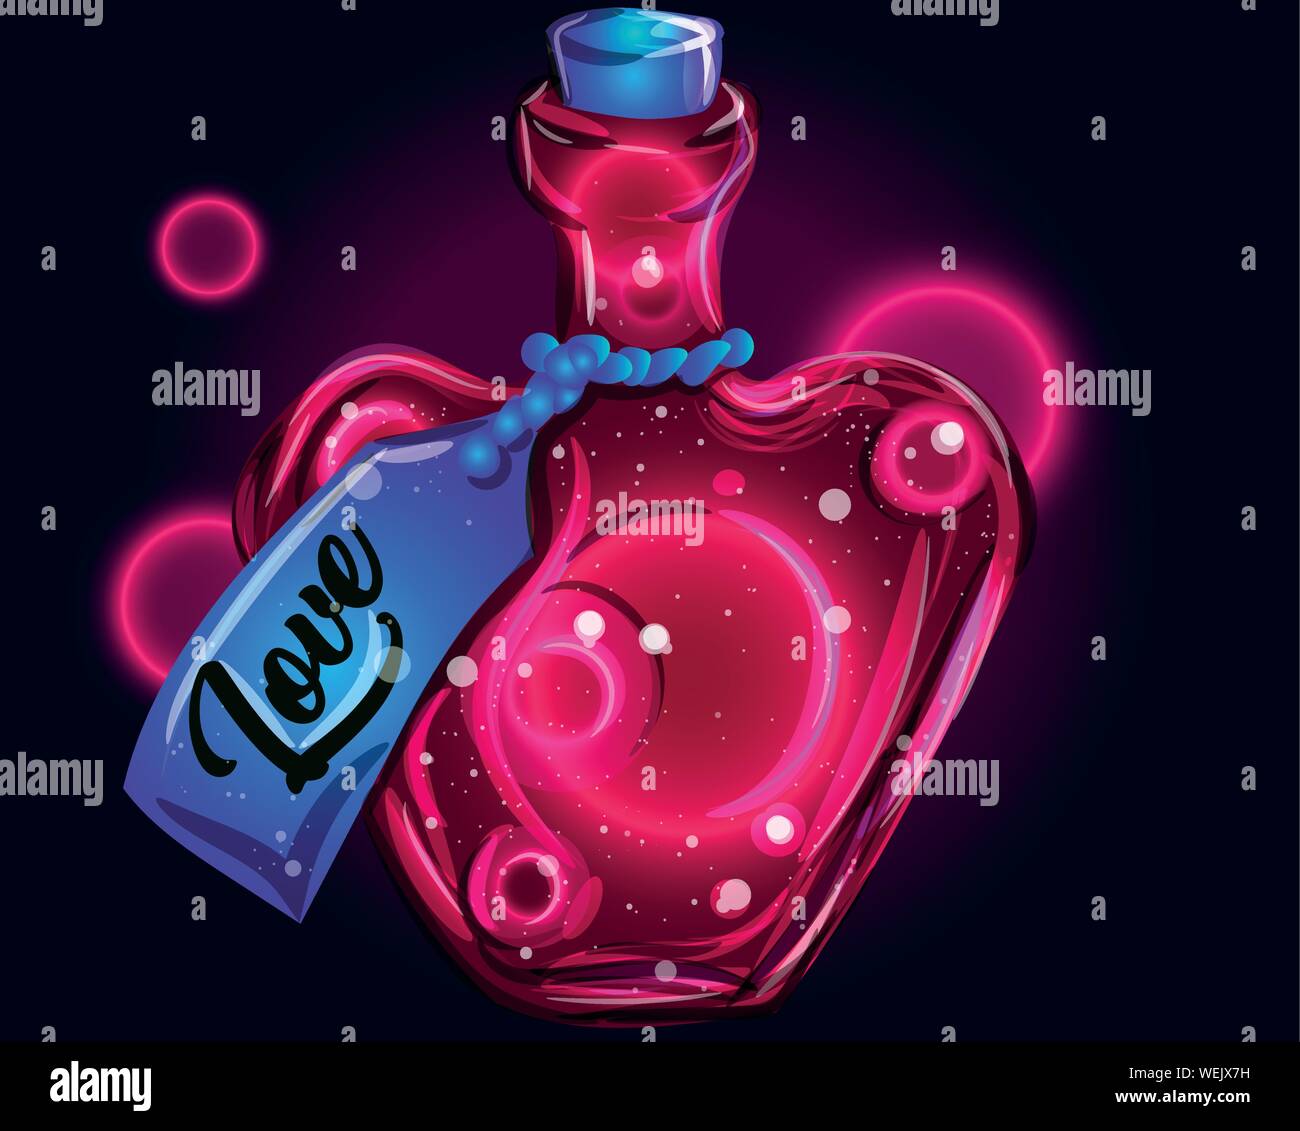 Liebe Flüssigkeit in einem jar-magic Gift Abbildung zum Valentinstag. Rezept für Anziehung in einer herzförmigen Flasche. Neon fantasy Licht. Stock Vektor